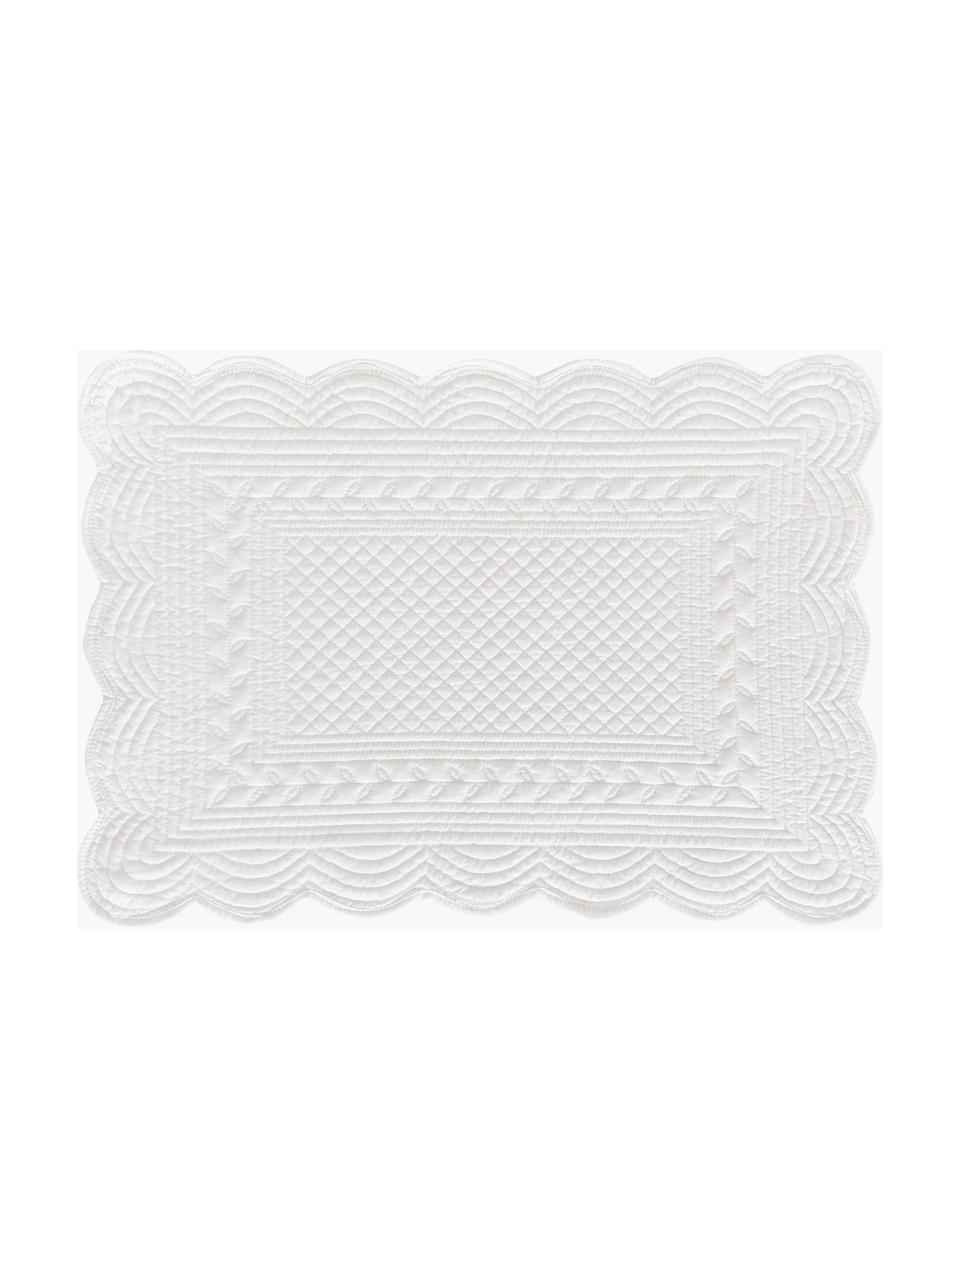 Tischsets Boutis, 2 Stück, 100 % Baumwolle, Weiss, B 34 x L 48 cm